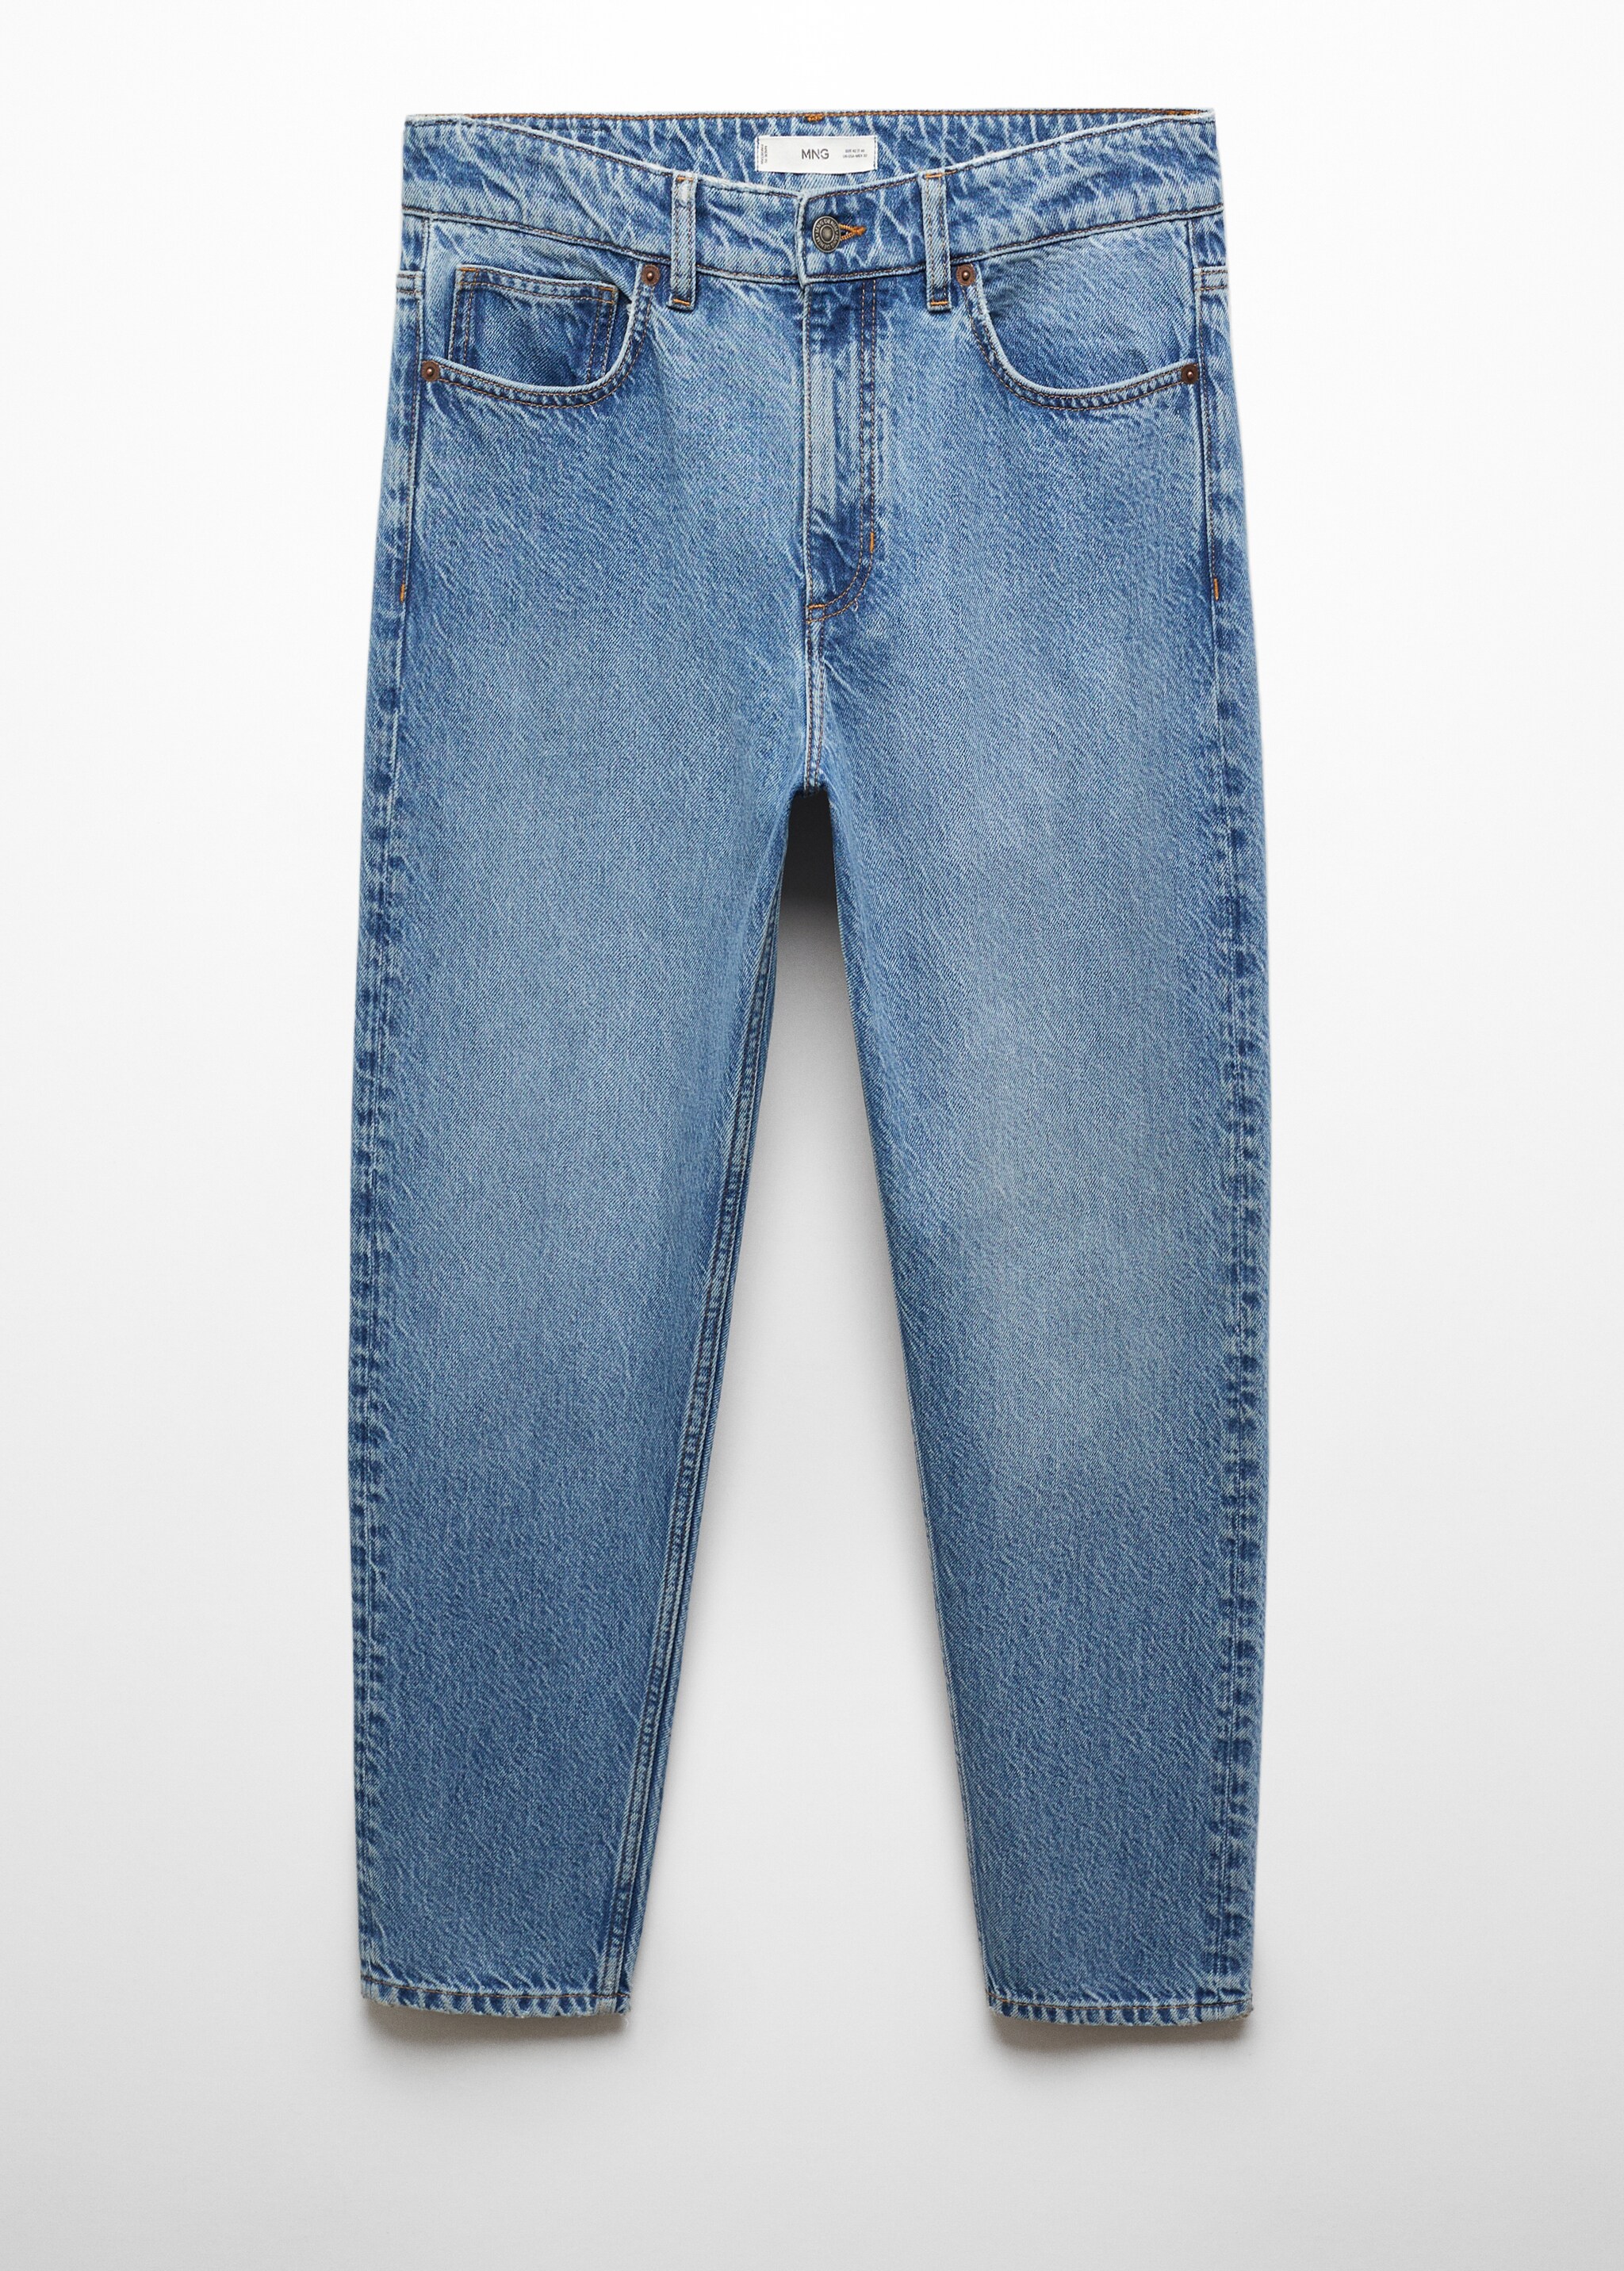 Jeans Sam tapered-fit  - Articolo senza modello